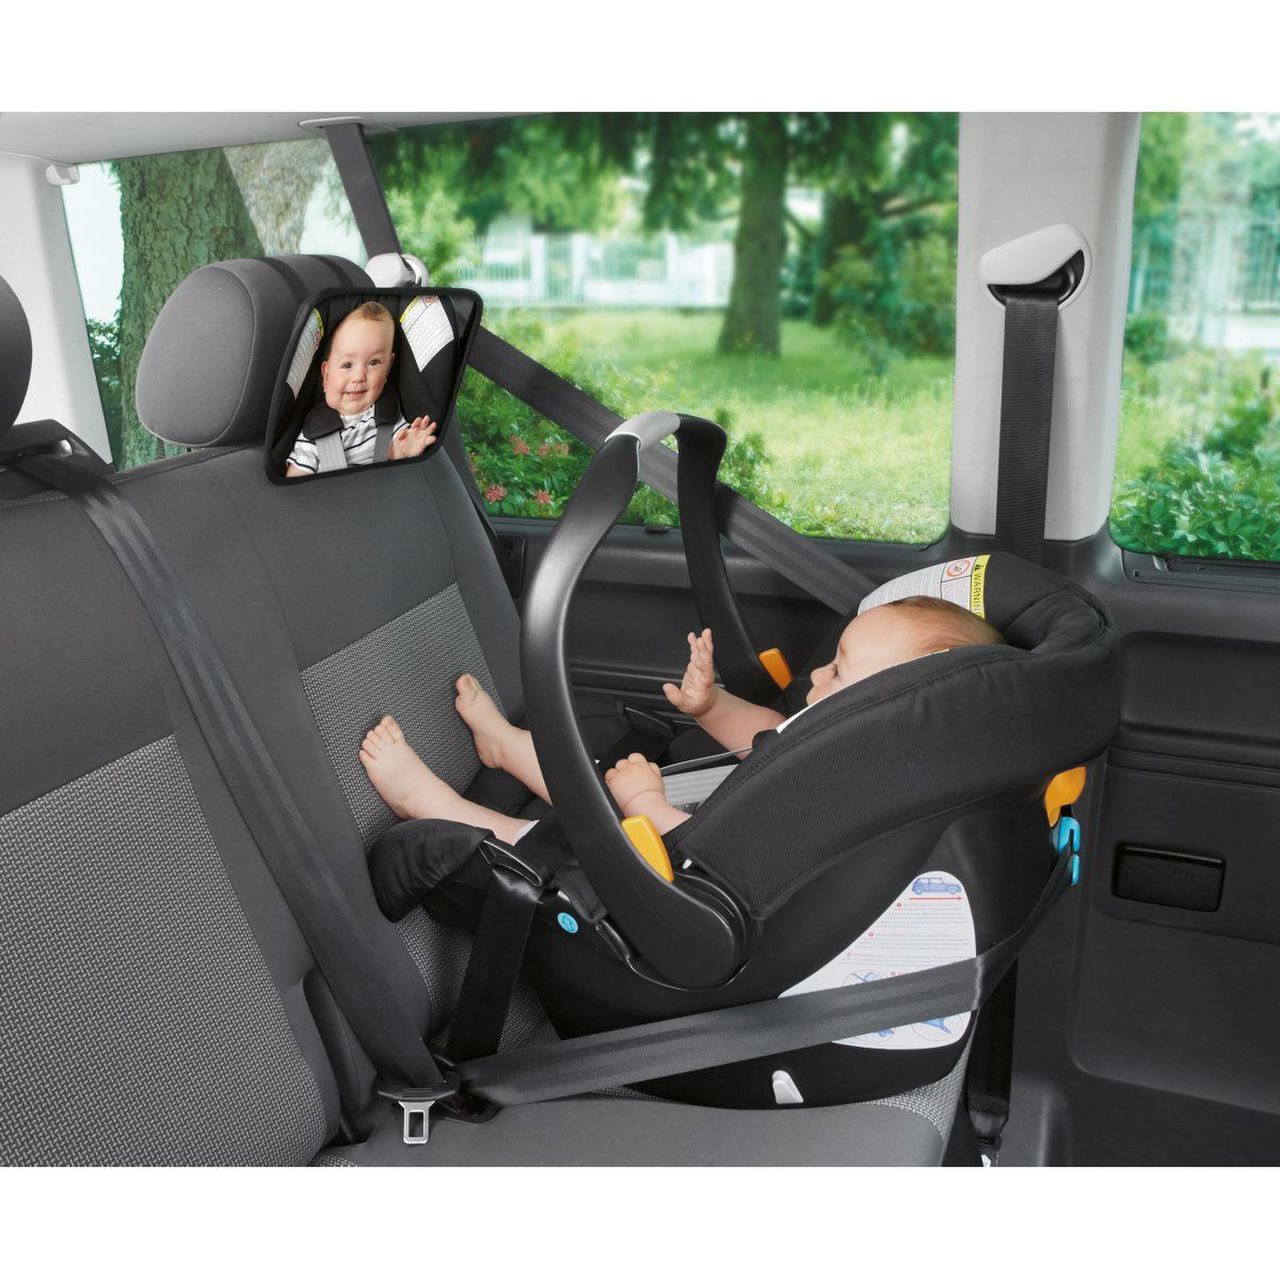 Espelho para o assento traseiro do carro, para monitorar o bebê, espelho de  alta qualidade, ajustável, para fixar no encosto do banco traseiro do carro  com visibilidade do bebê/criança pelo retrovisor 